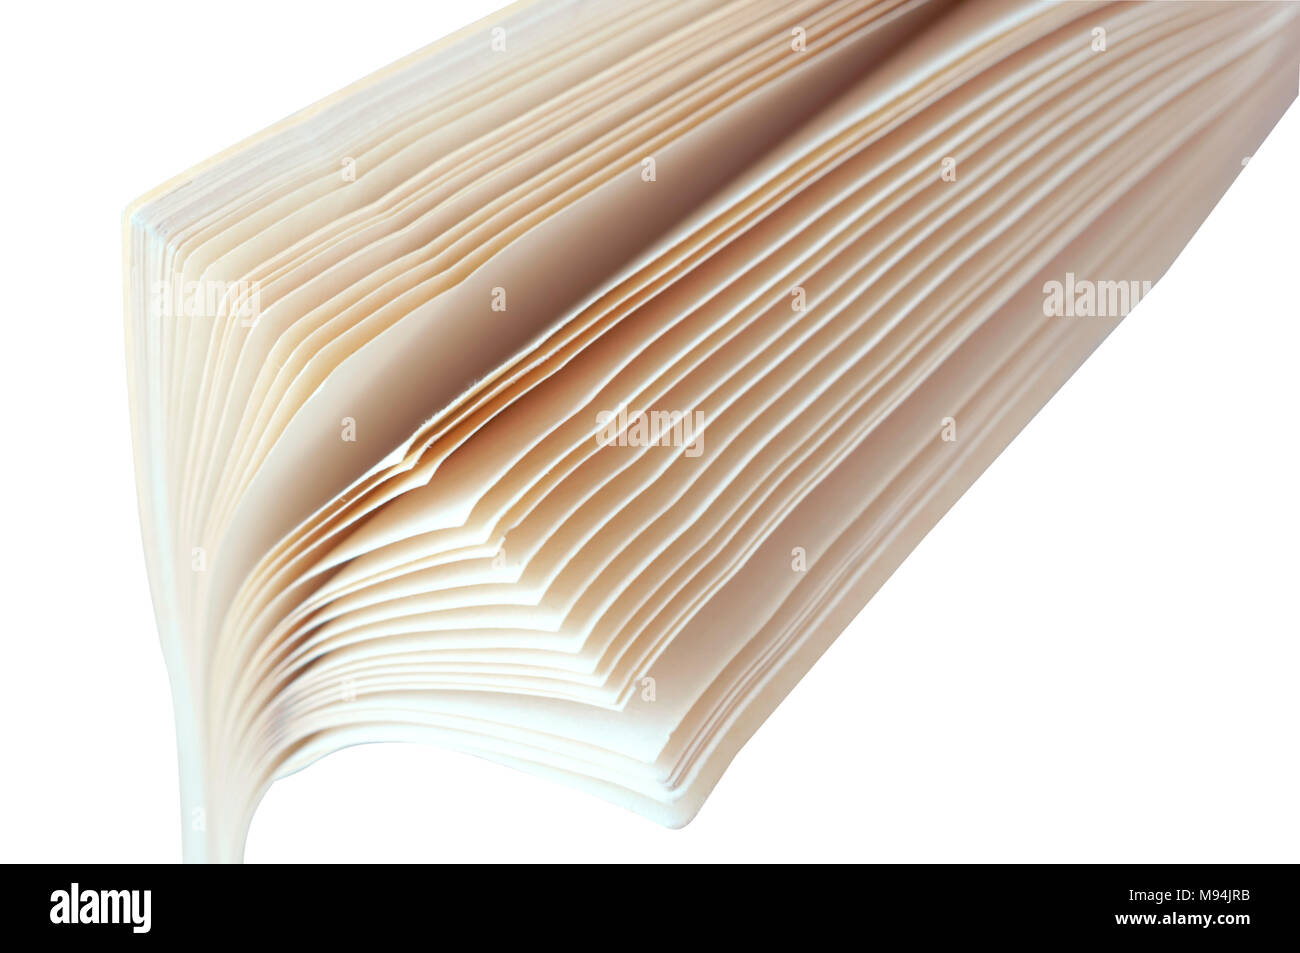 Le pagine del libro, libro in giro, fogli bianchi di libri con lettere in nero Foto Stock